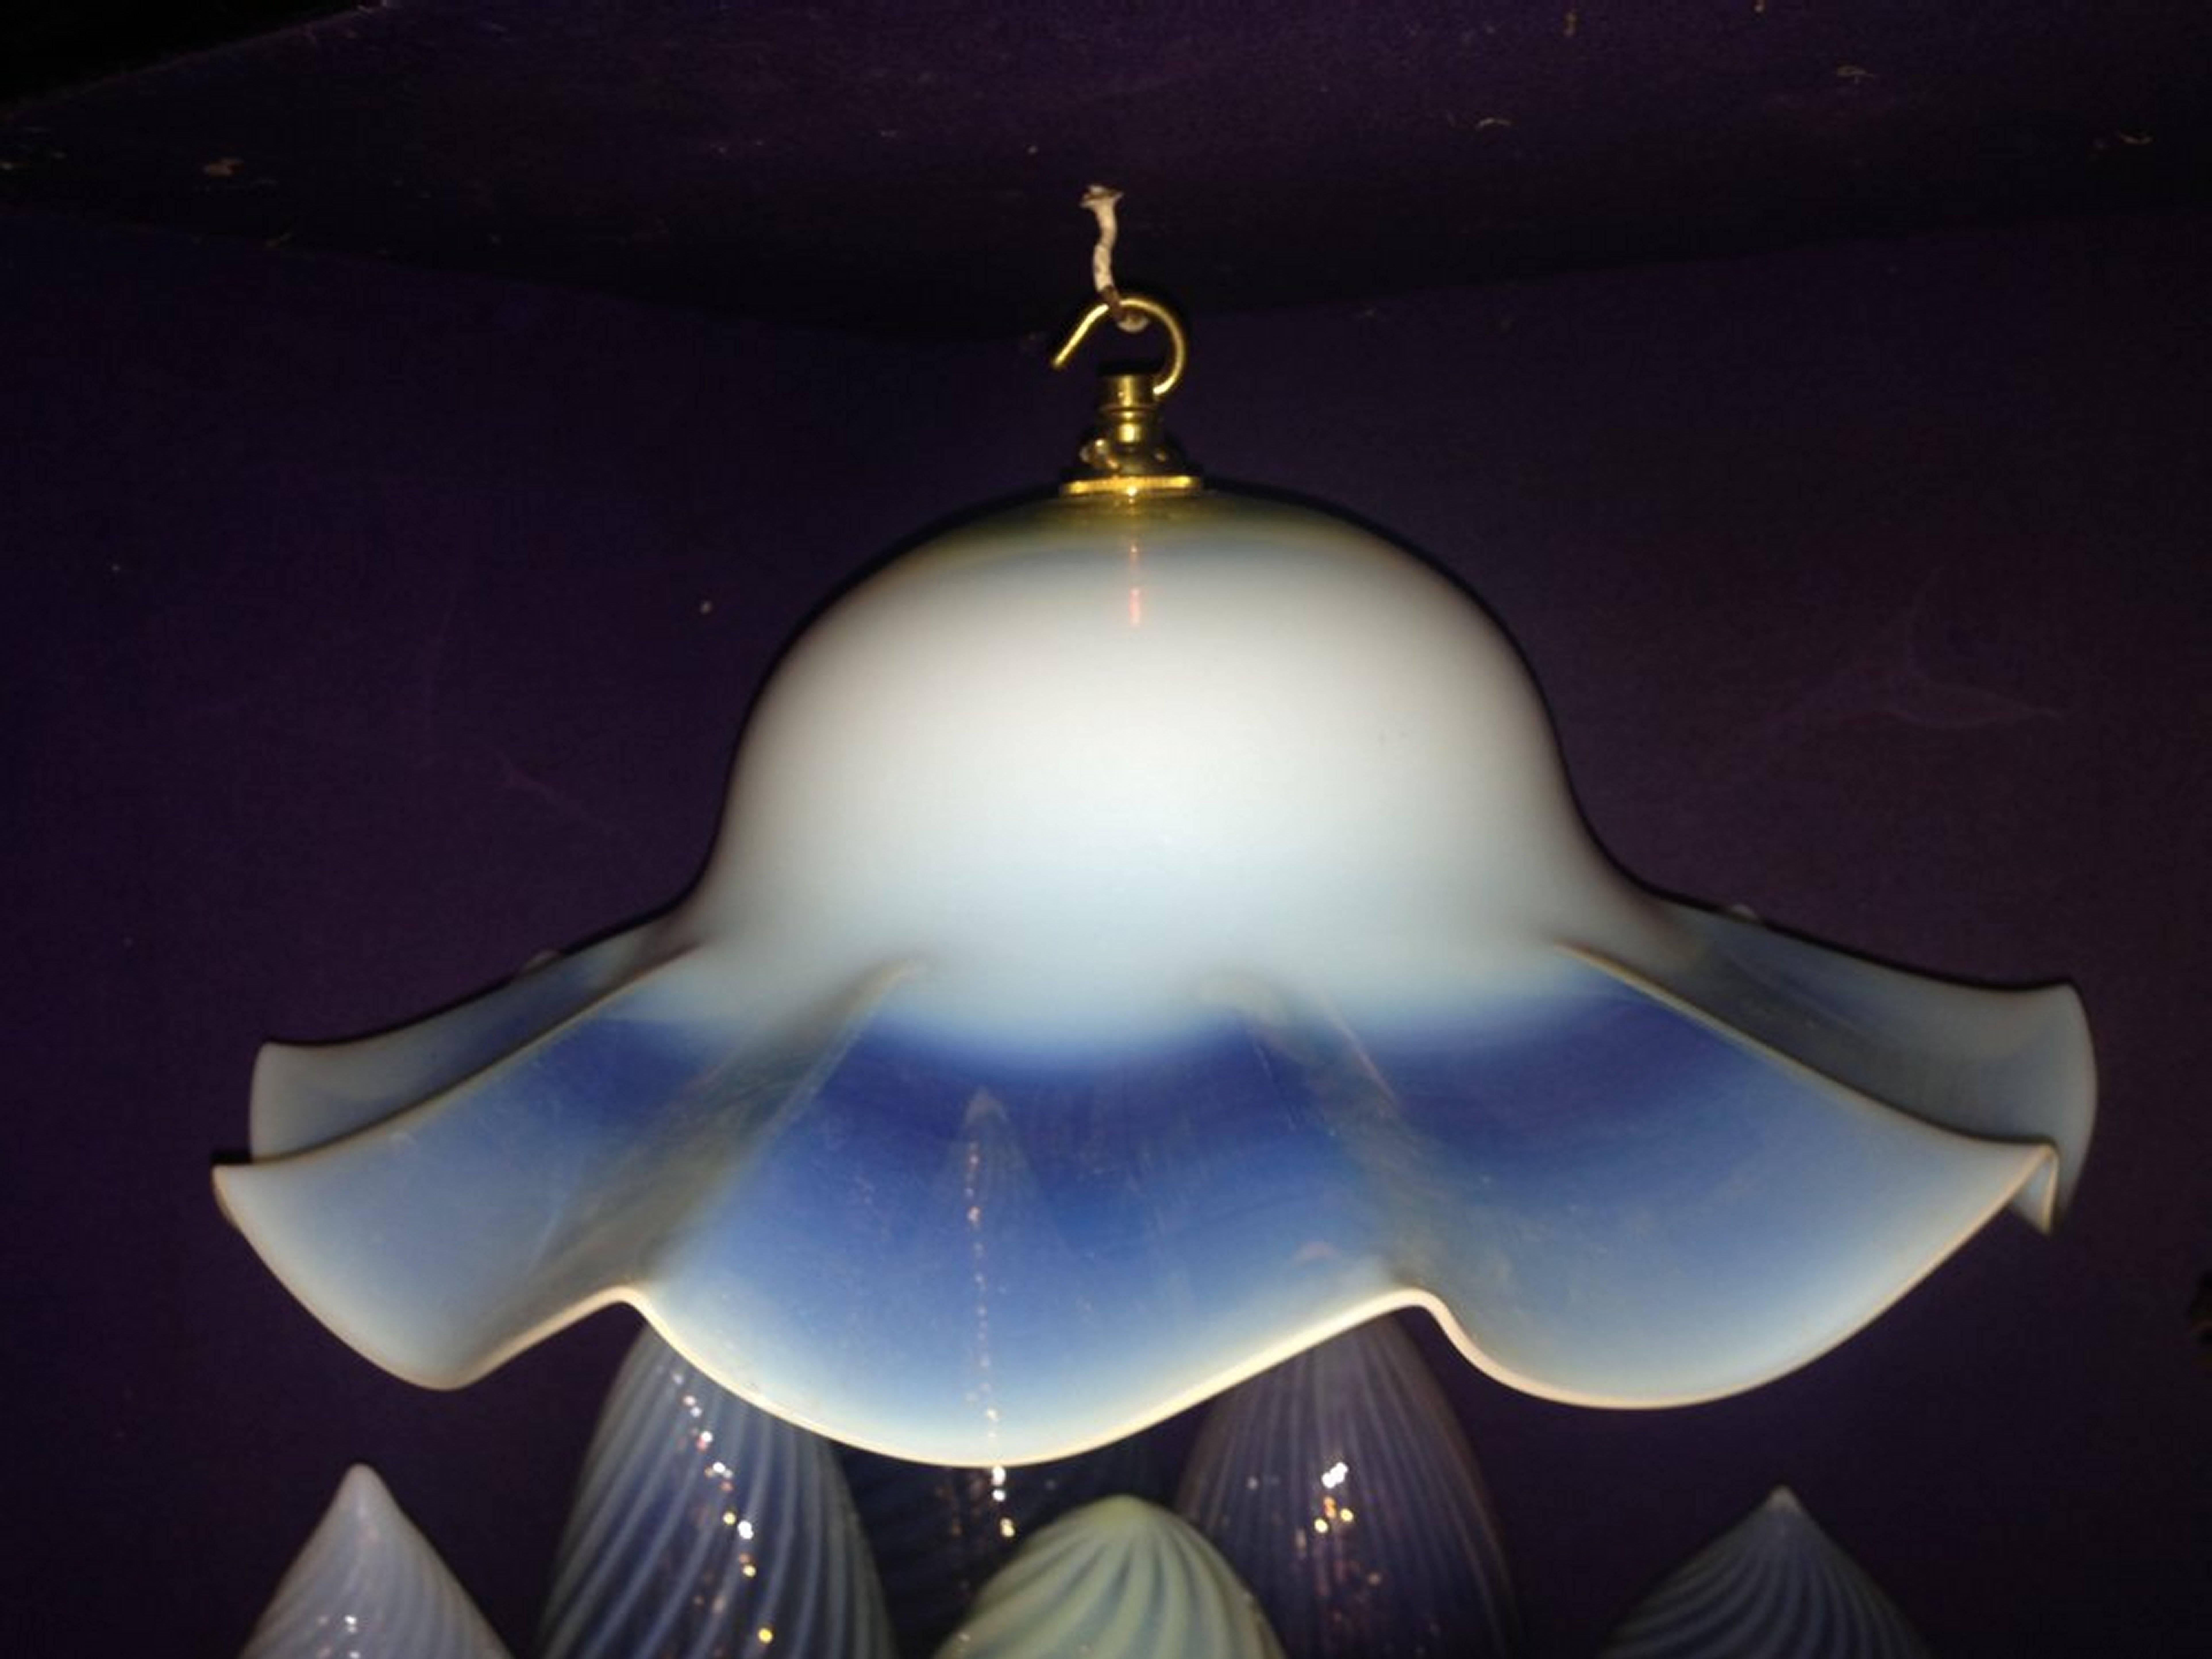 Ein großes und beeindruckendes Paar von Arts and Crafts Vaseline/Uranium Glasschirmen.
Höhe ohne Glühbirnenfassung 5 1/2